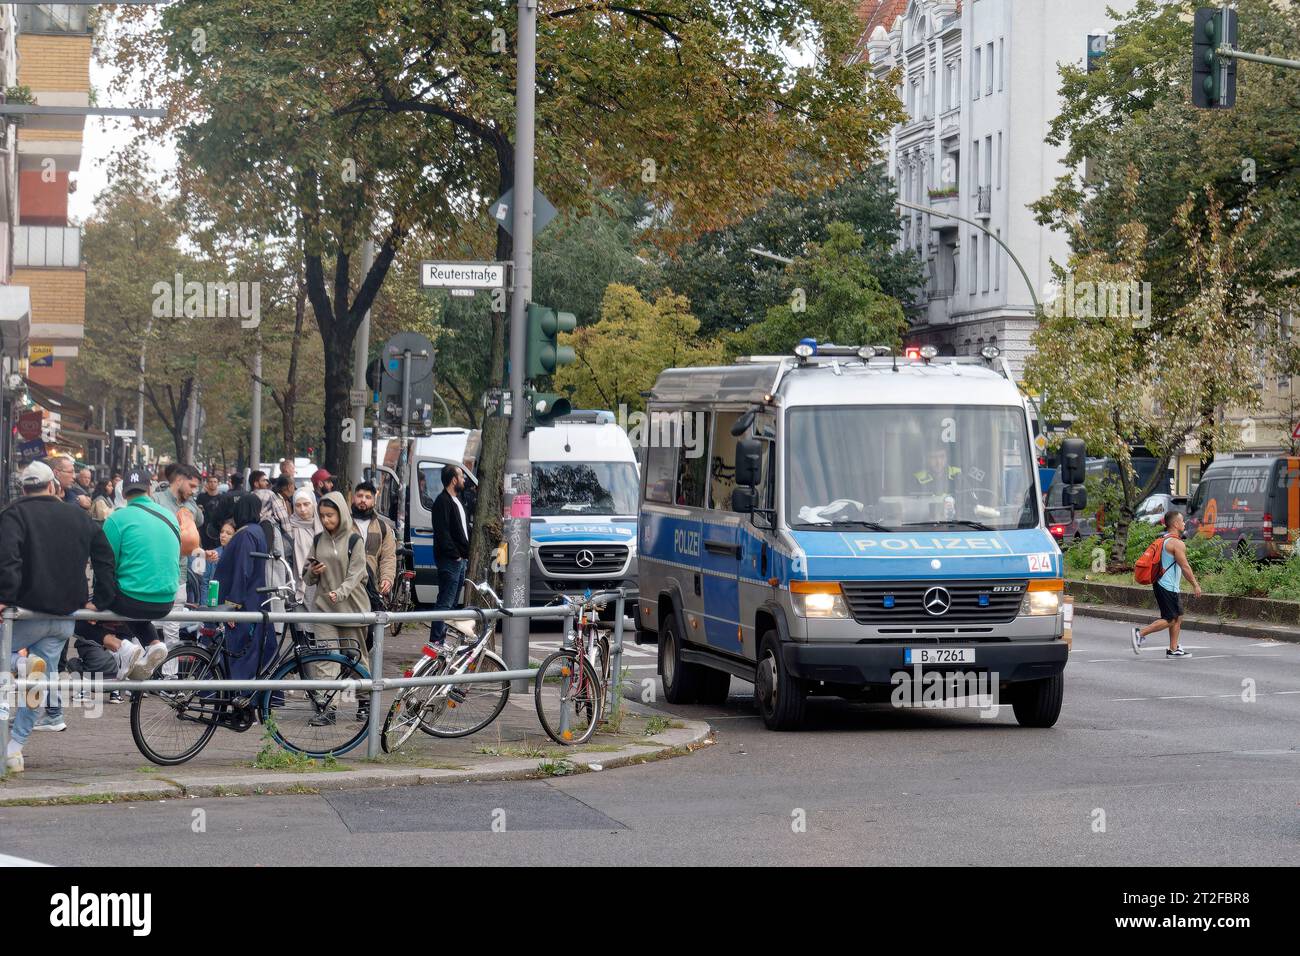 13.10.23,  Polizeieinsatz an der Sonnenallee Ecke Reuterstrasse nach Hass-Protesten mit antisemitischen Parolen,  Berlin-Neukoelln , news, Aktuelles, Stock Photo